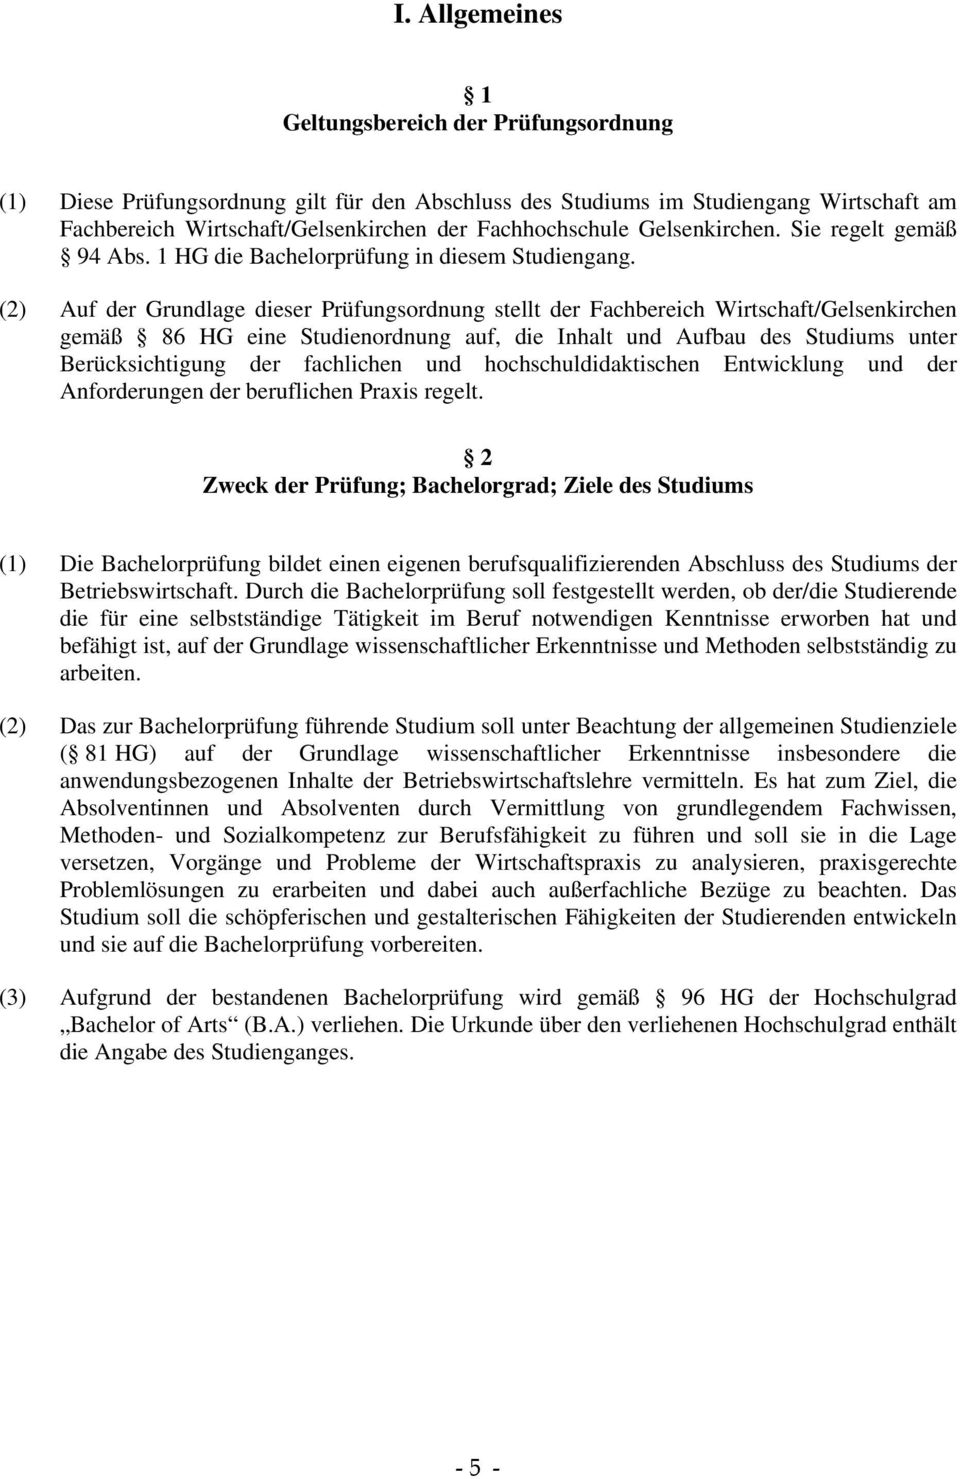 (2) Auf der Grundlage dieser Prüfungsordnung stellt der Fachbereich Wirtschaft/Gelsenkirchen gemäß 86 HG eine Studienordnung auf, die Inhalt und Aufbau des Studiums unter Berücksichtigung der